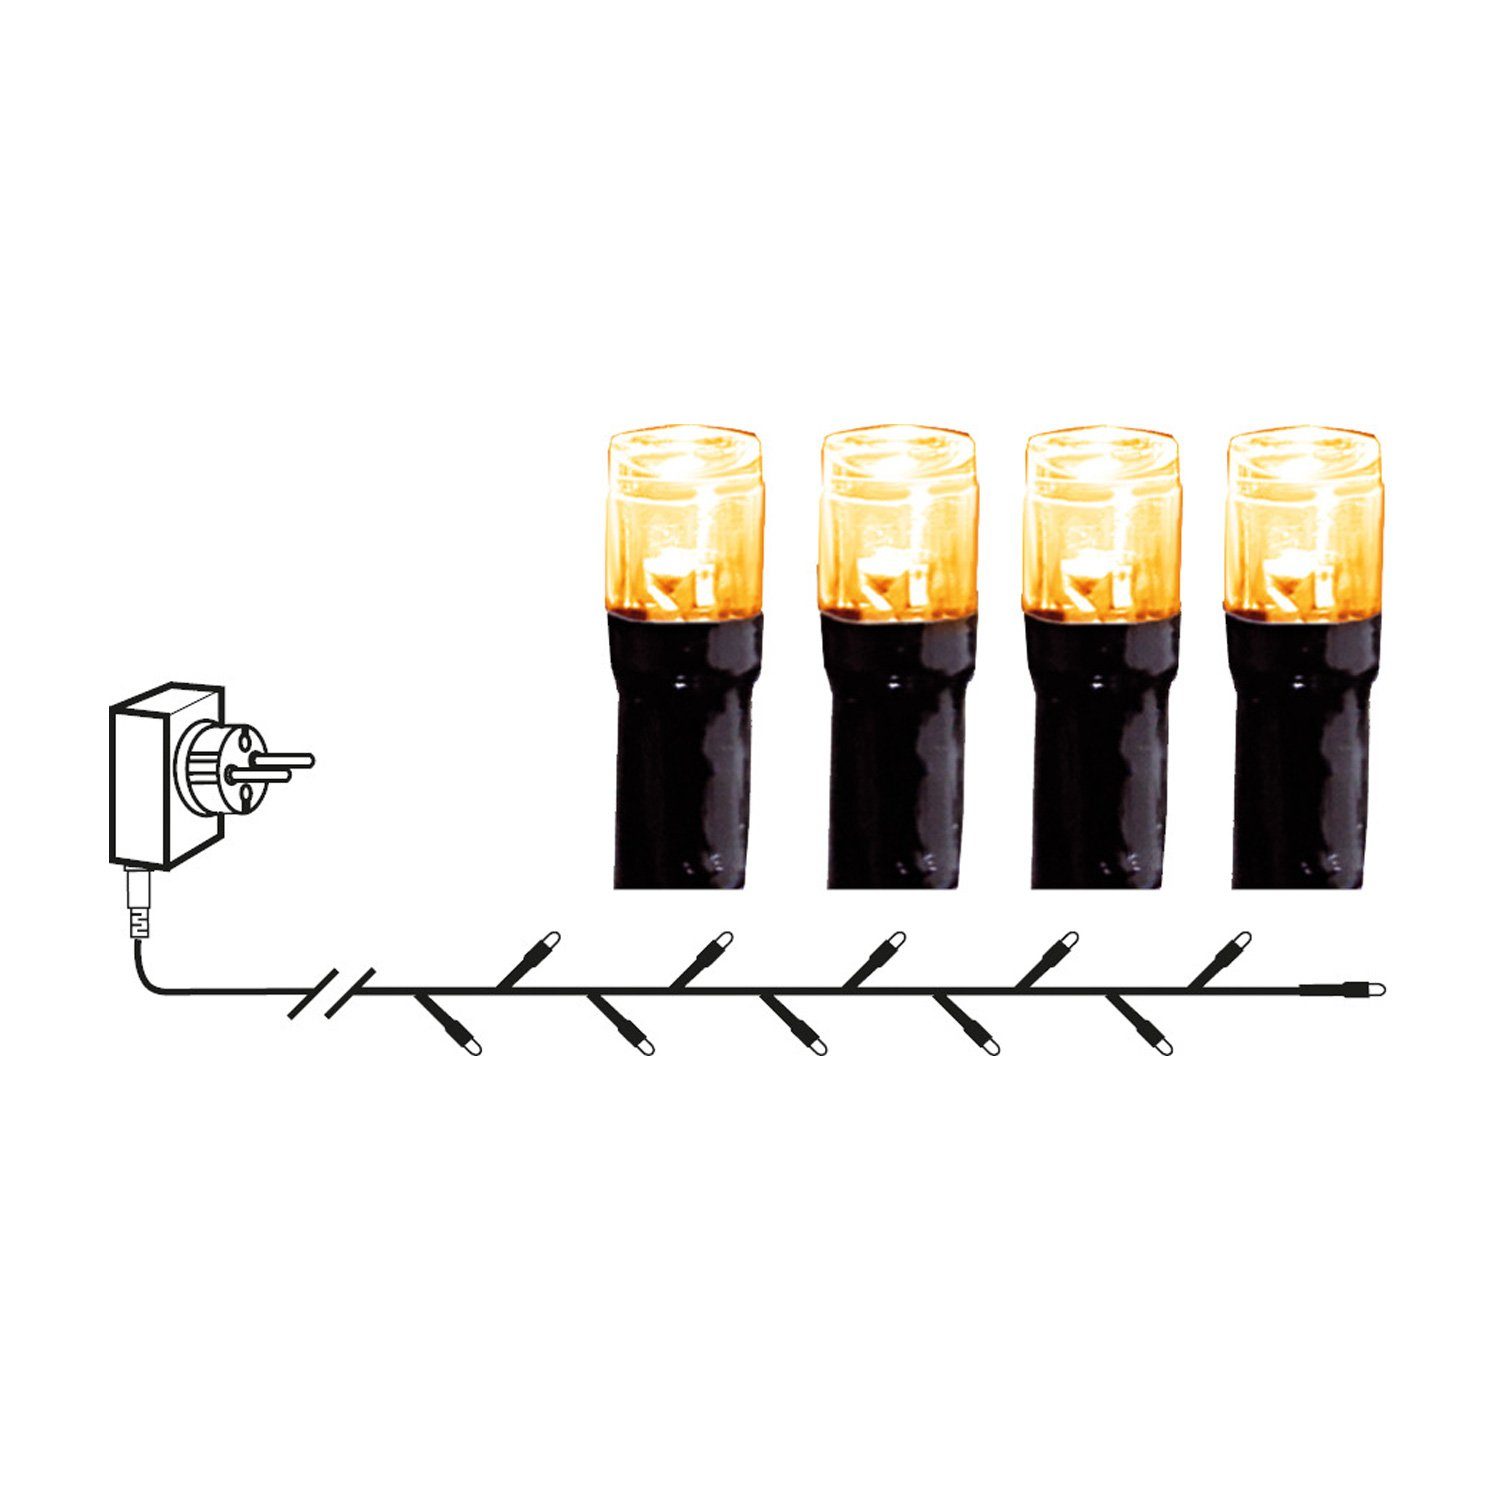 LED 40-flammig IP44 Außen Lichterkette MARELIDA 40 LED-Lichterkette 2,8m, bernstein LED gold warmweiße